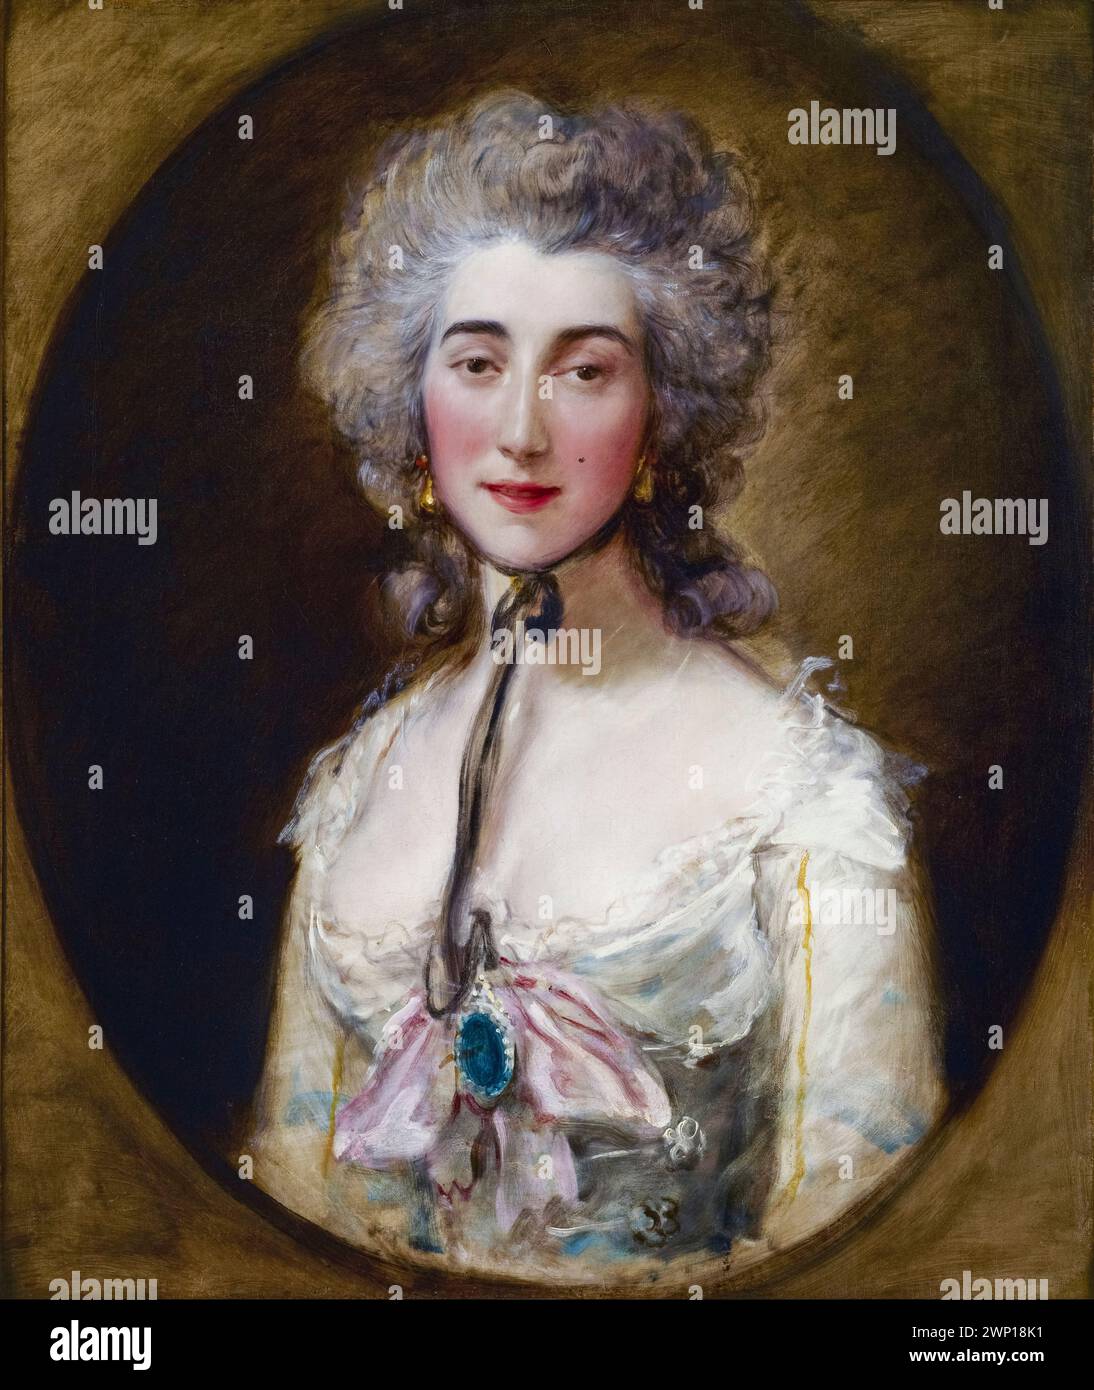 Grace Elliott (ca. 1754–1823), schottische Kurtisane, Schriftstellerin und Spionin, die während der Französischen Revolution in Paris lebte. Geliebte des Herzogs von Orléans und des zukünftigen Georg IV. Von Großbritannien, Porträtgemälde in Öl auf Leinwand von Thomas Gainsborough, um 1782 Stockfoto